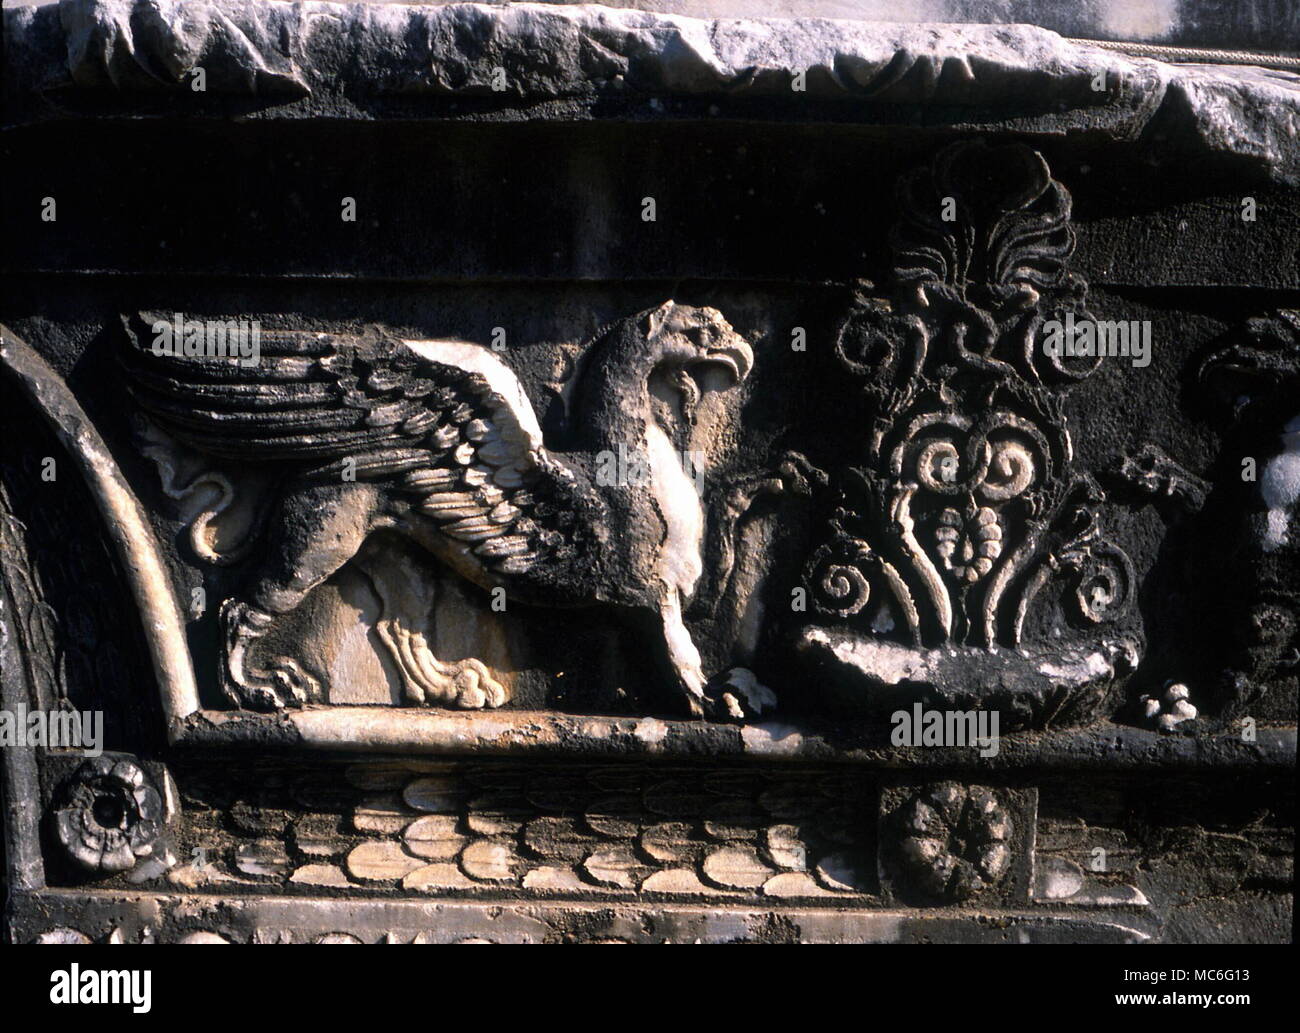 Griffin, ein fabelhaftes Tier mit dem Kopf und Flügel wie ein Adler und der Körper des Löwen. Bas Relief innerhalb des griechischen Tempel in Didyma, Türkei. Stockfoto